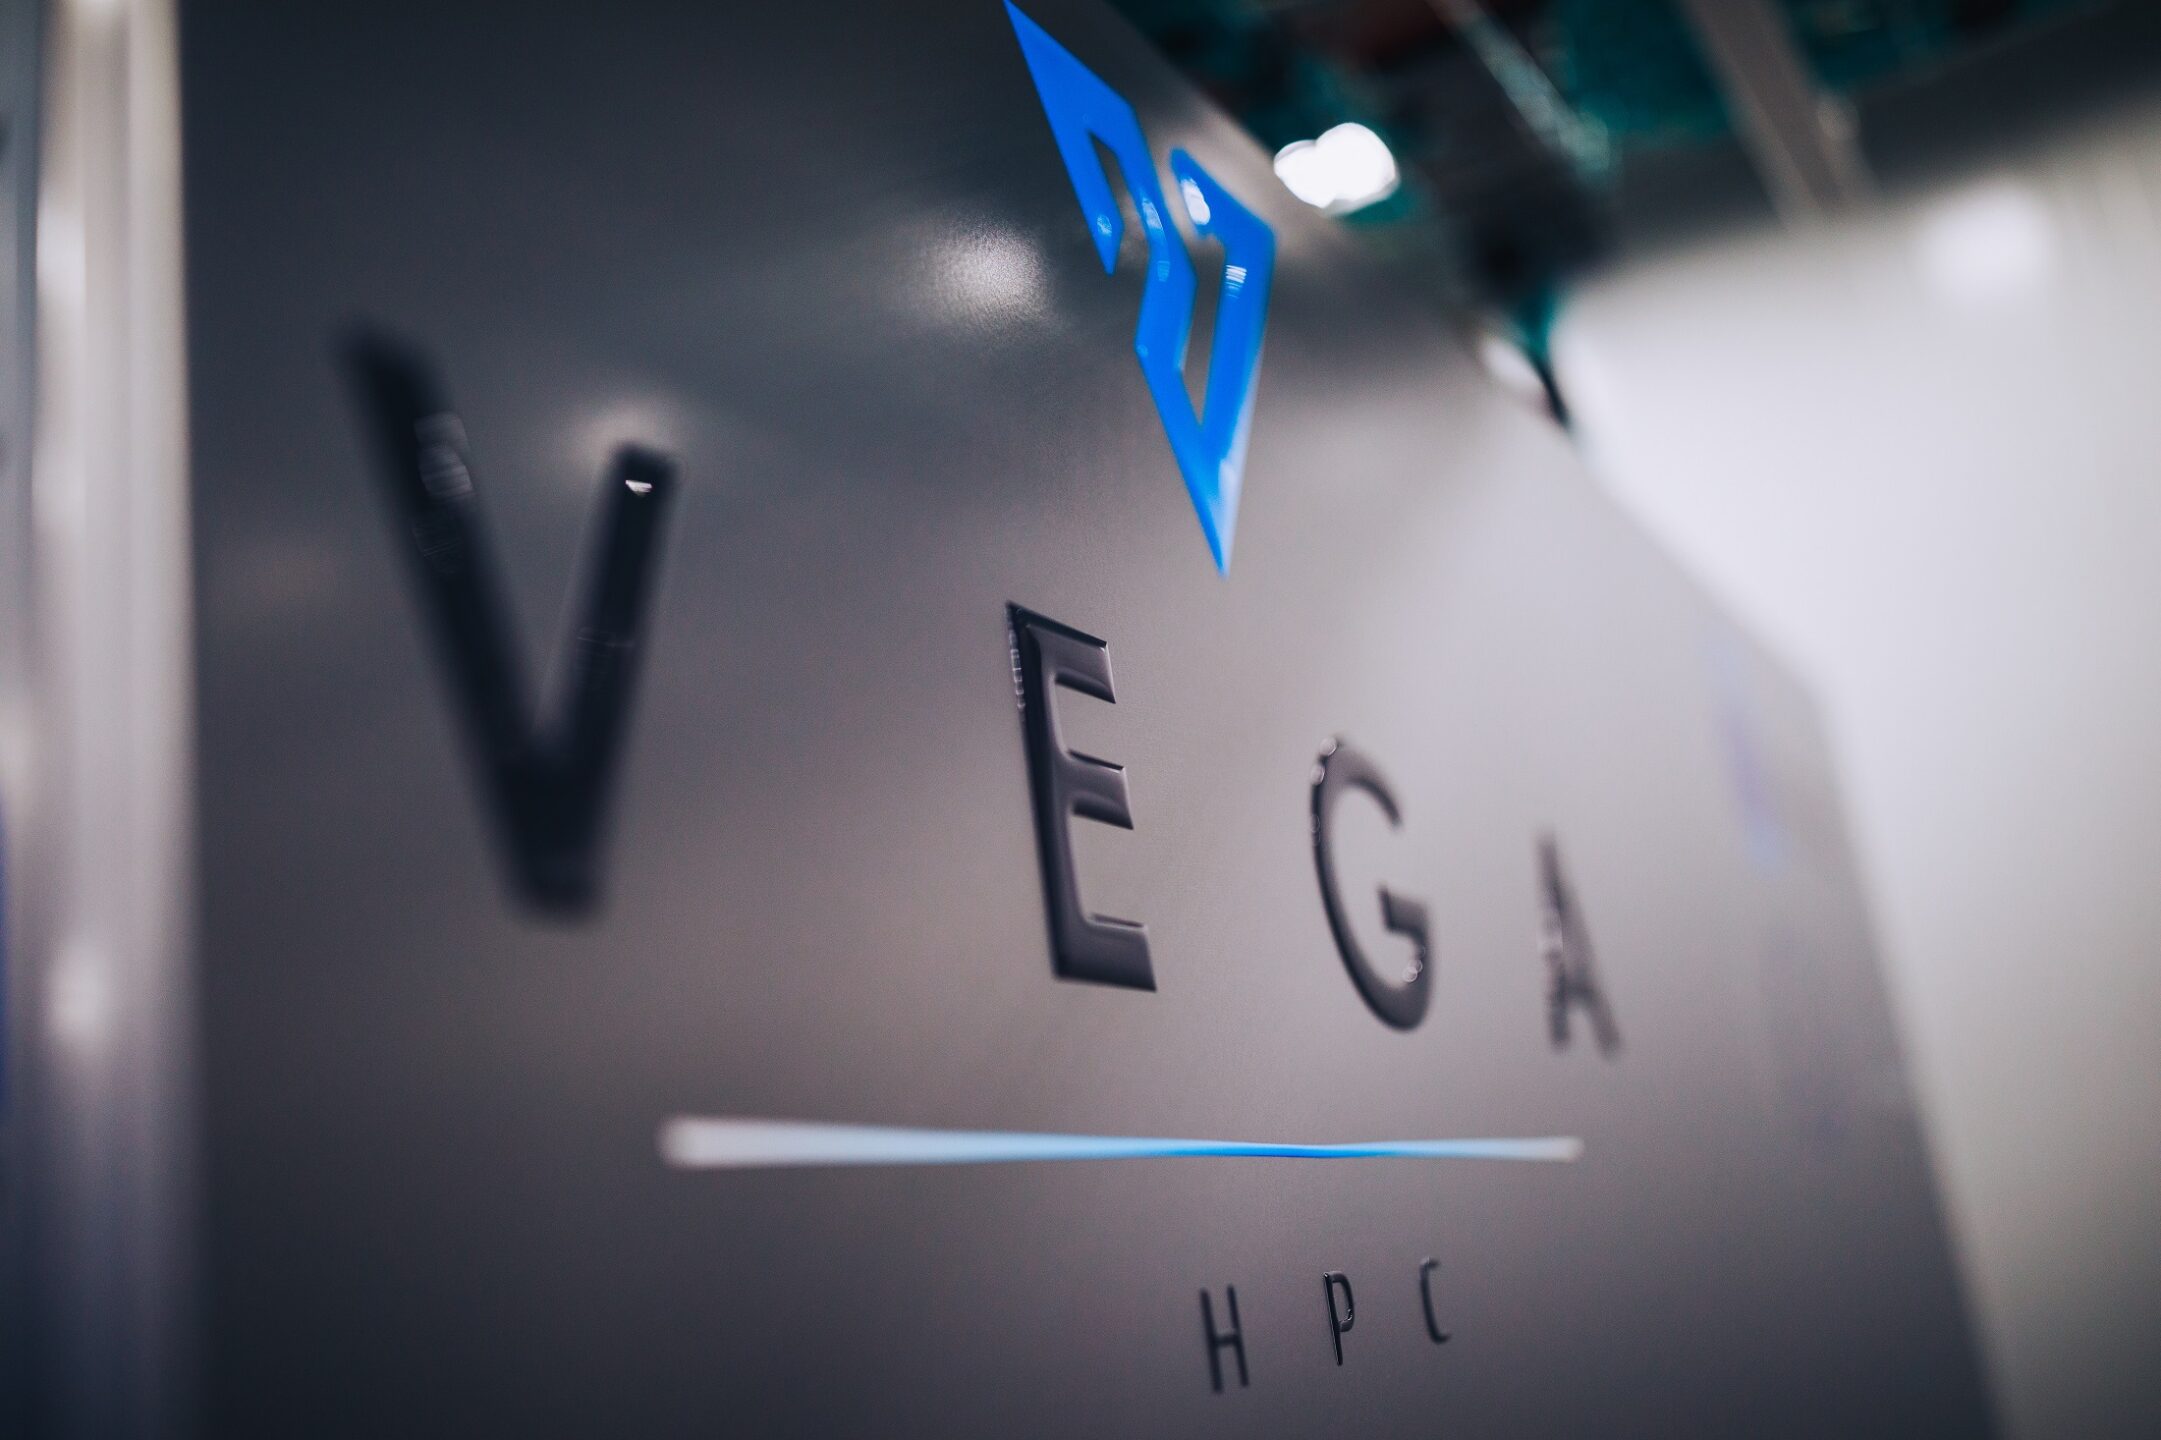 HPC Vega